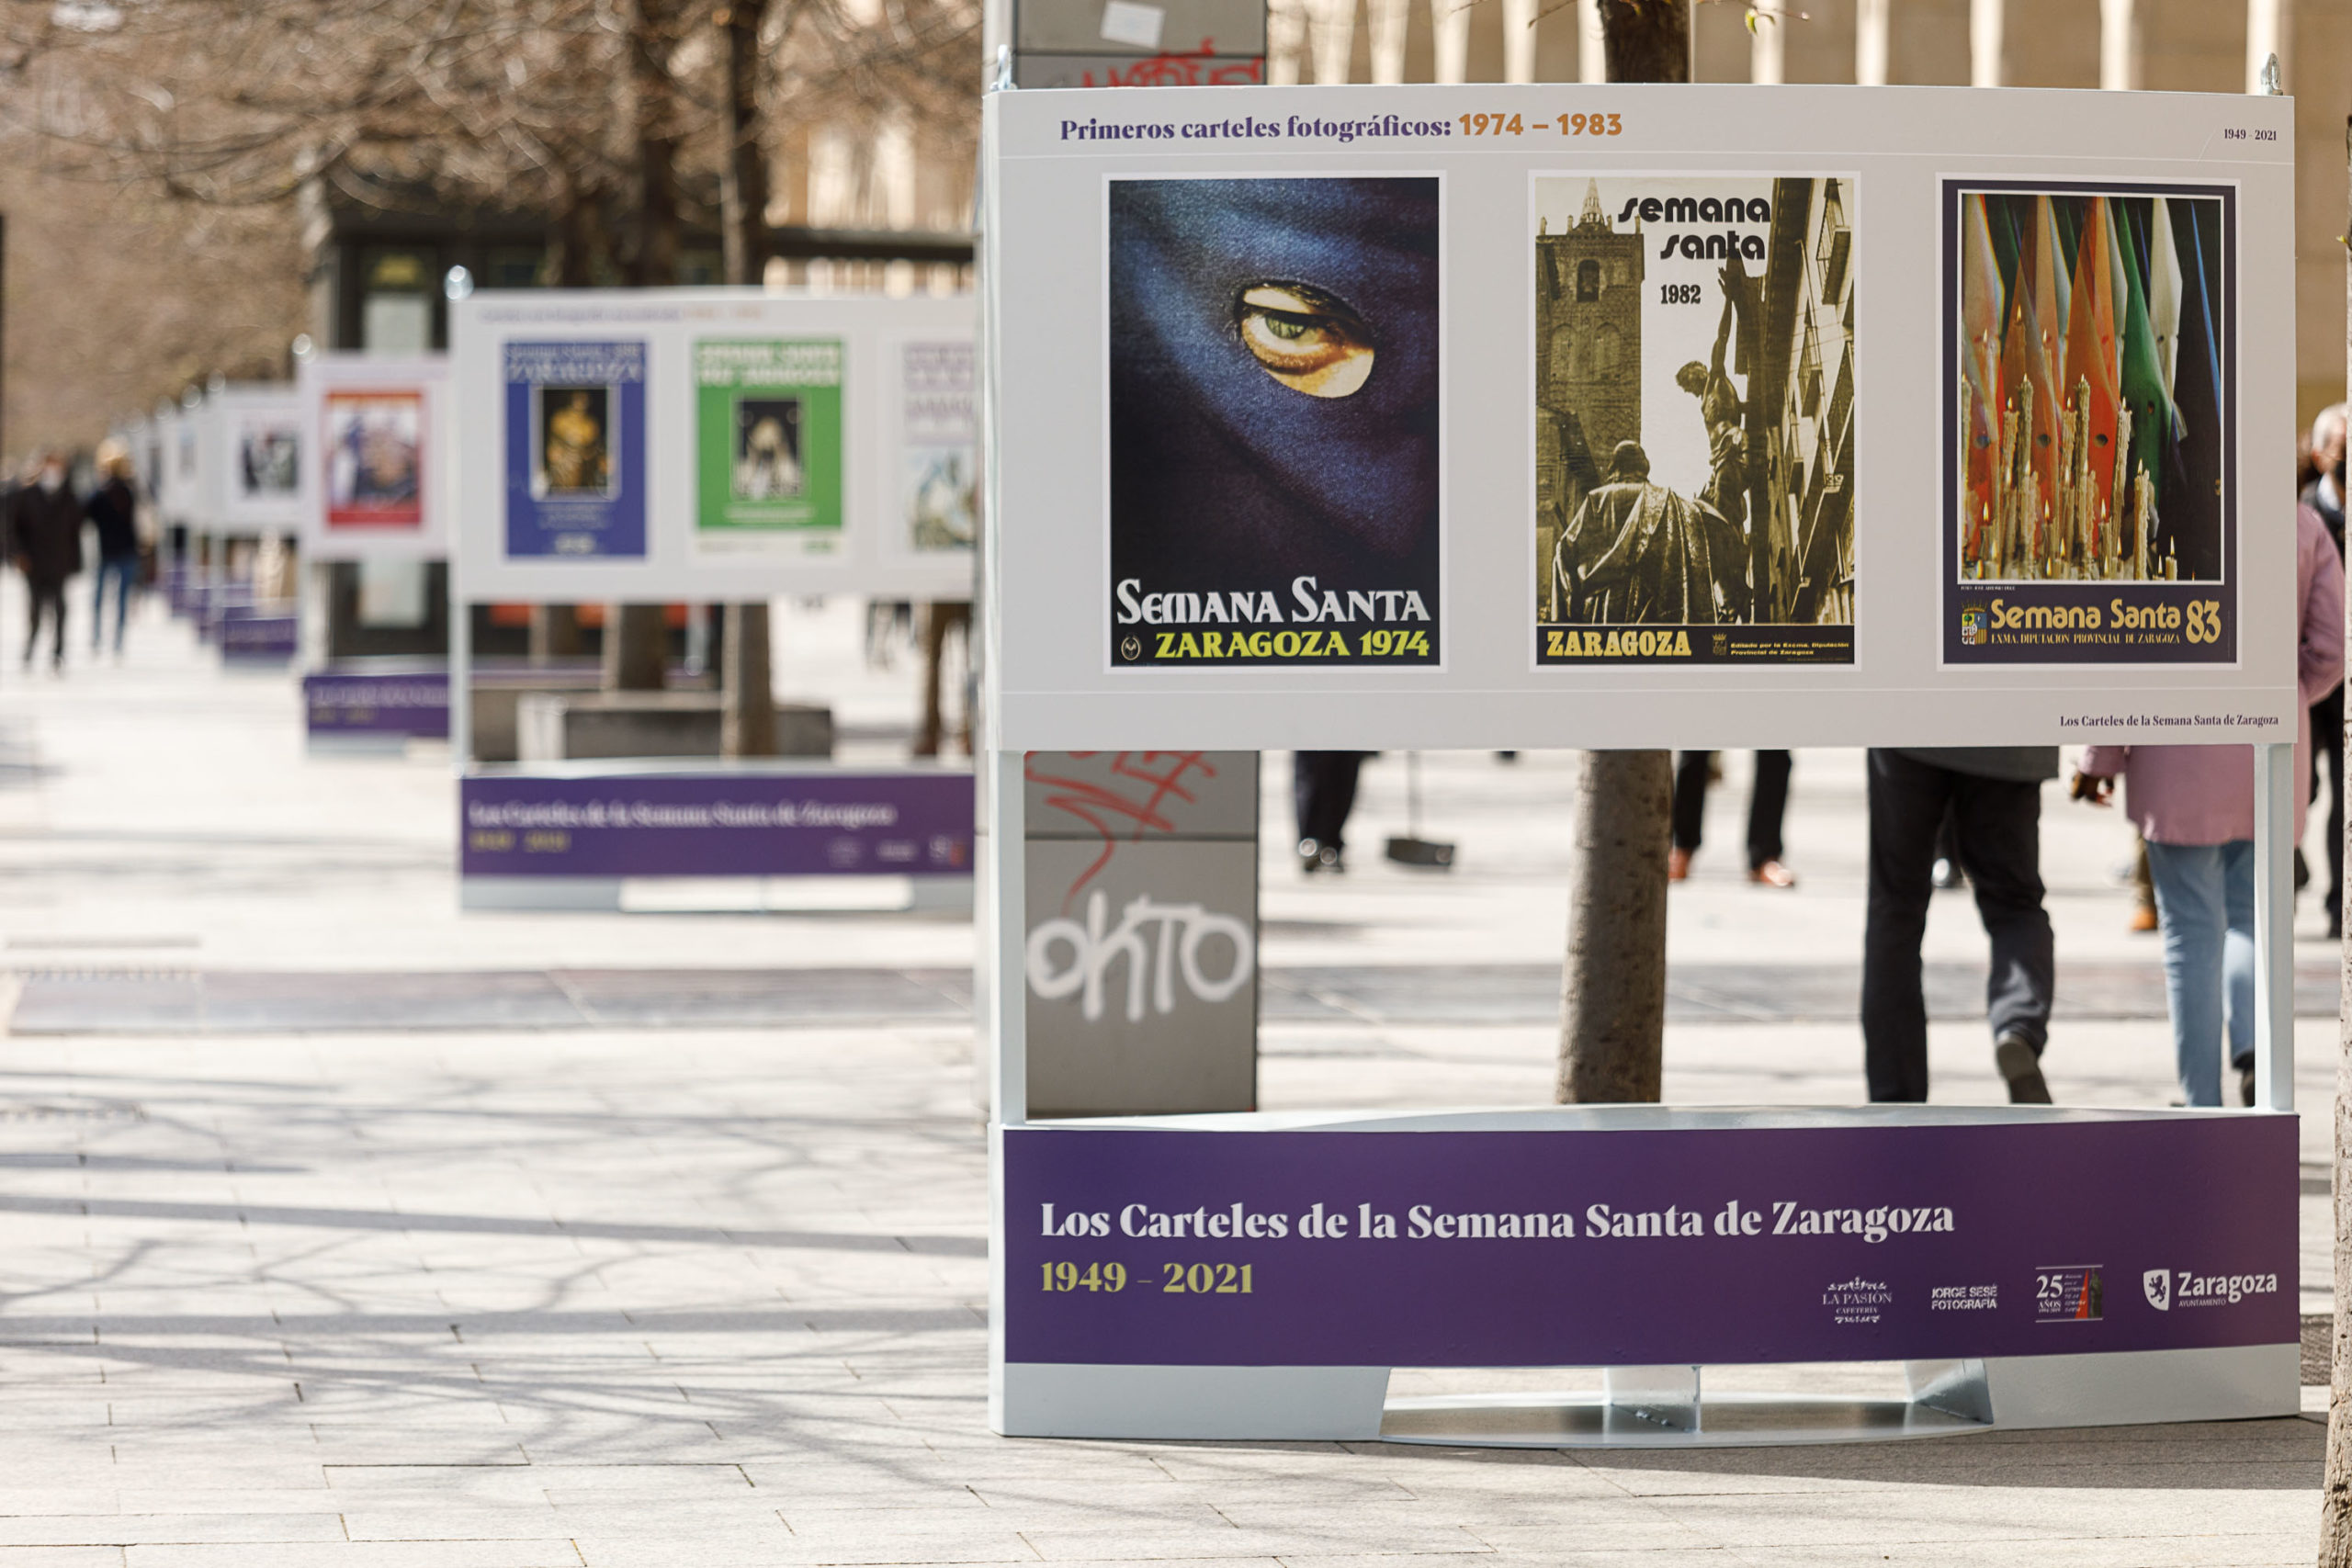 Inauguración de la exposición "Los carteles de la Semana Santa" Zaragoza 2021